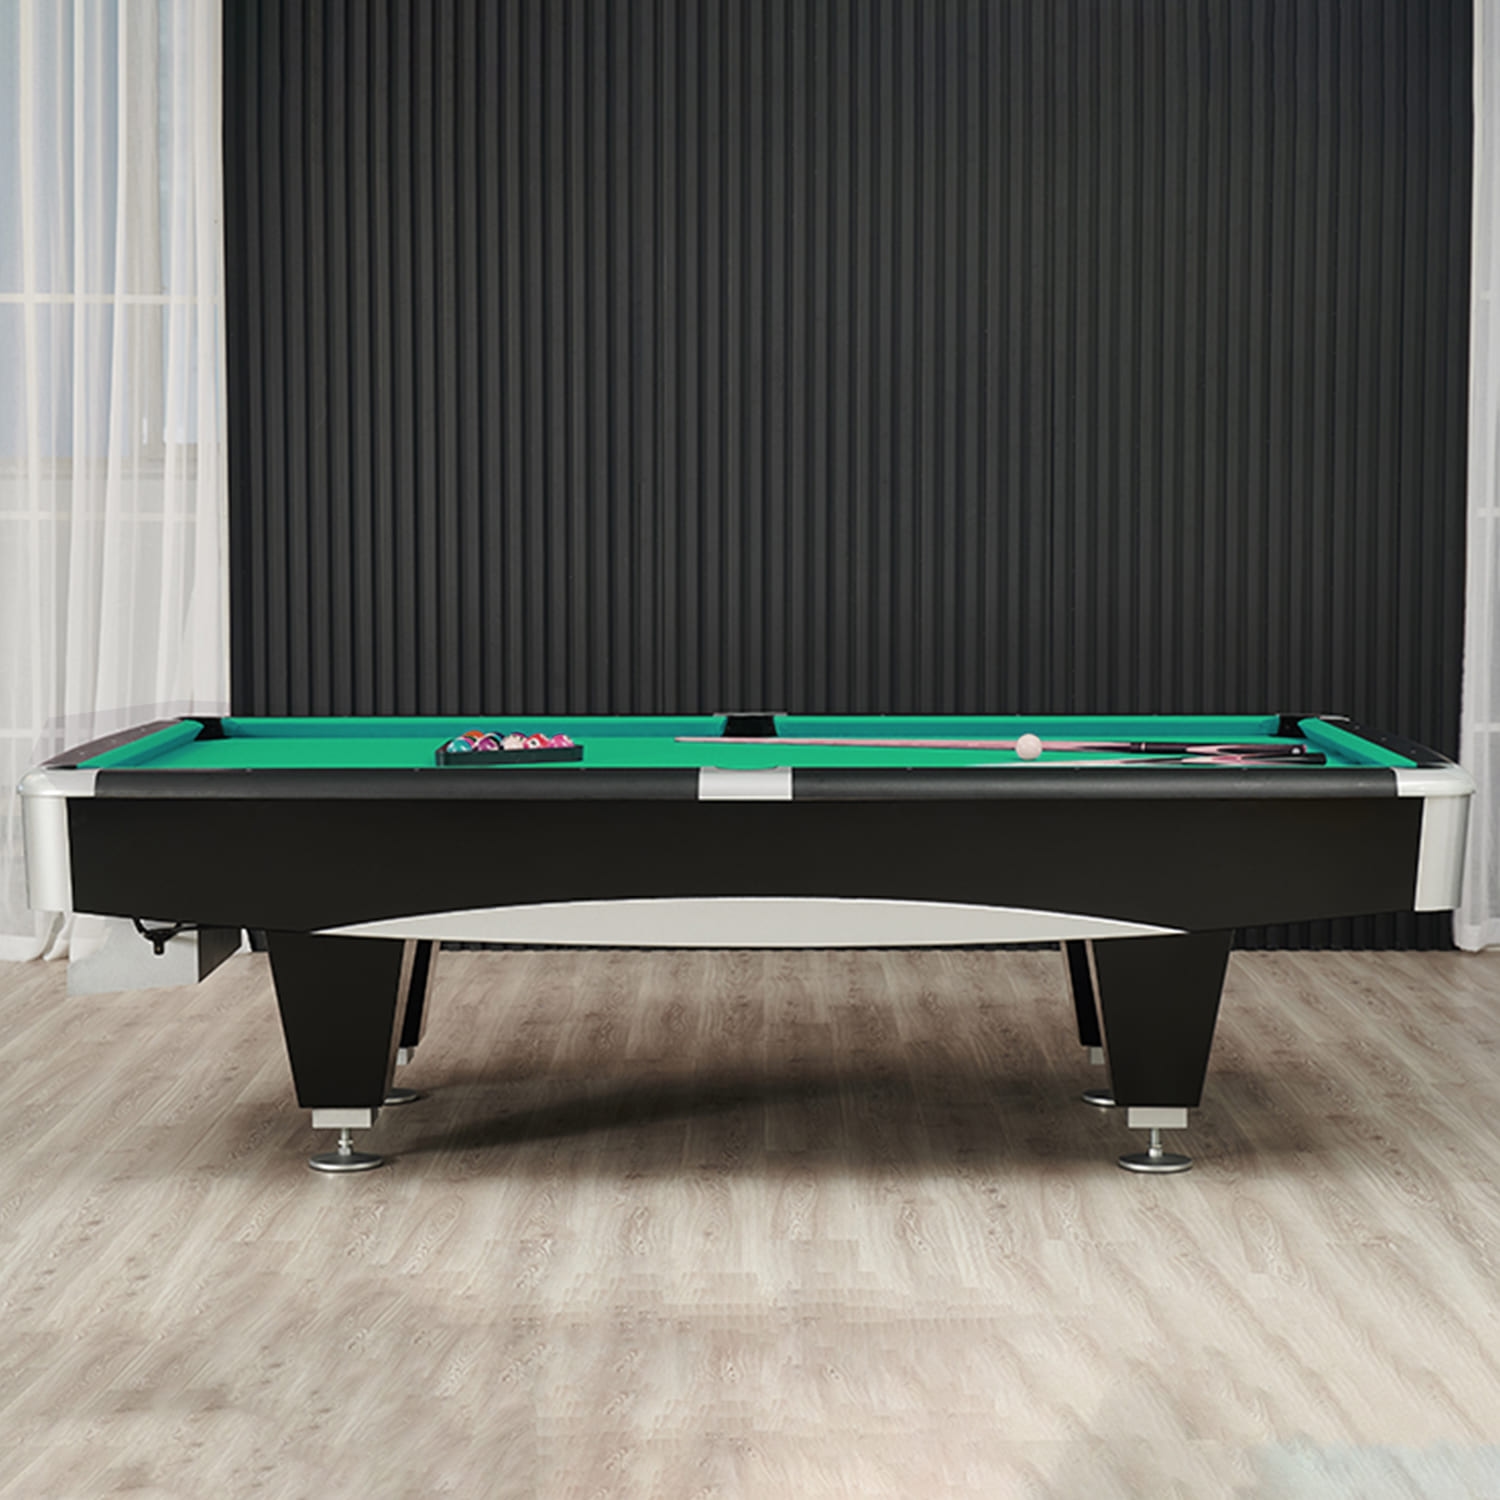 Billiard Pool Table 8 Feet | Marble Material